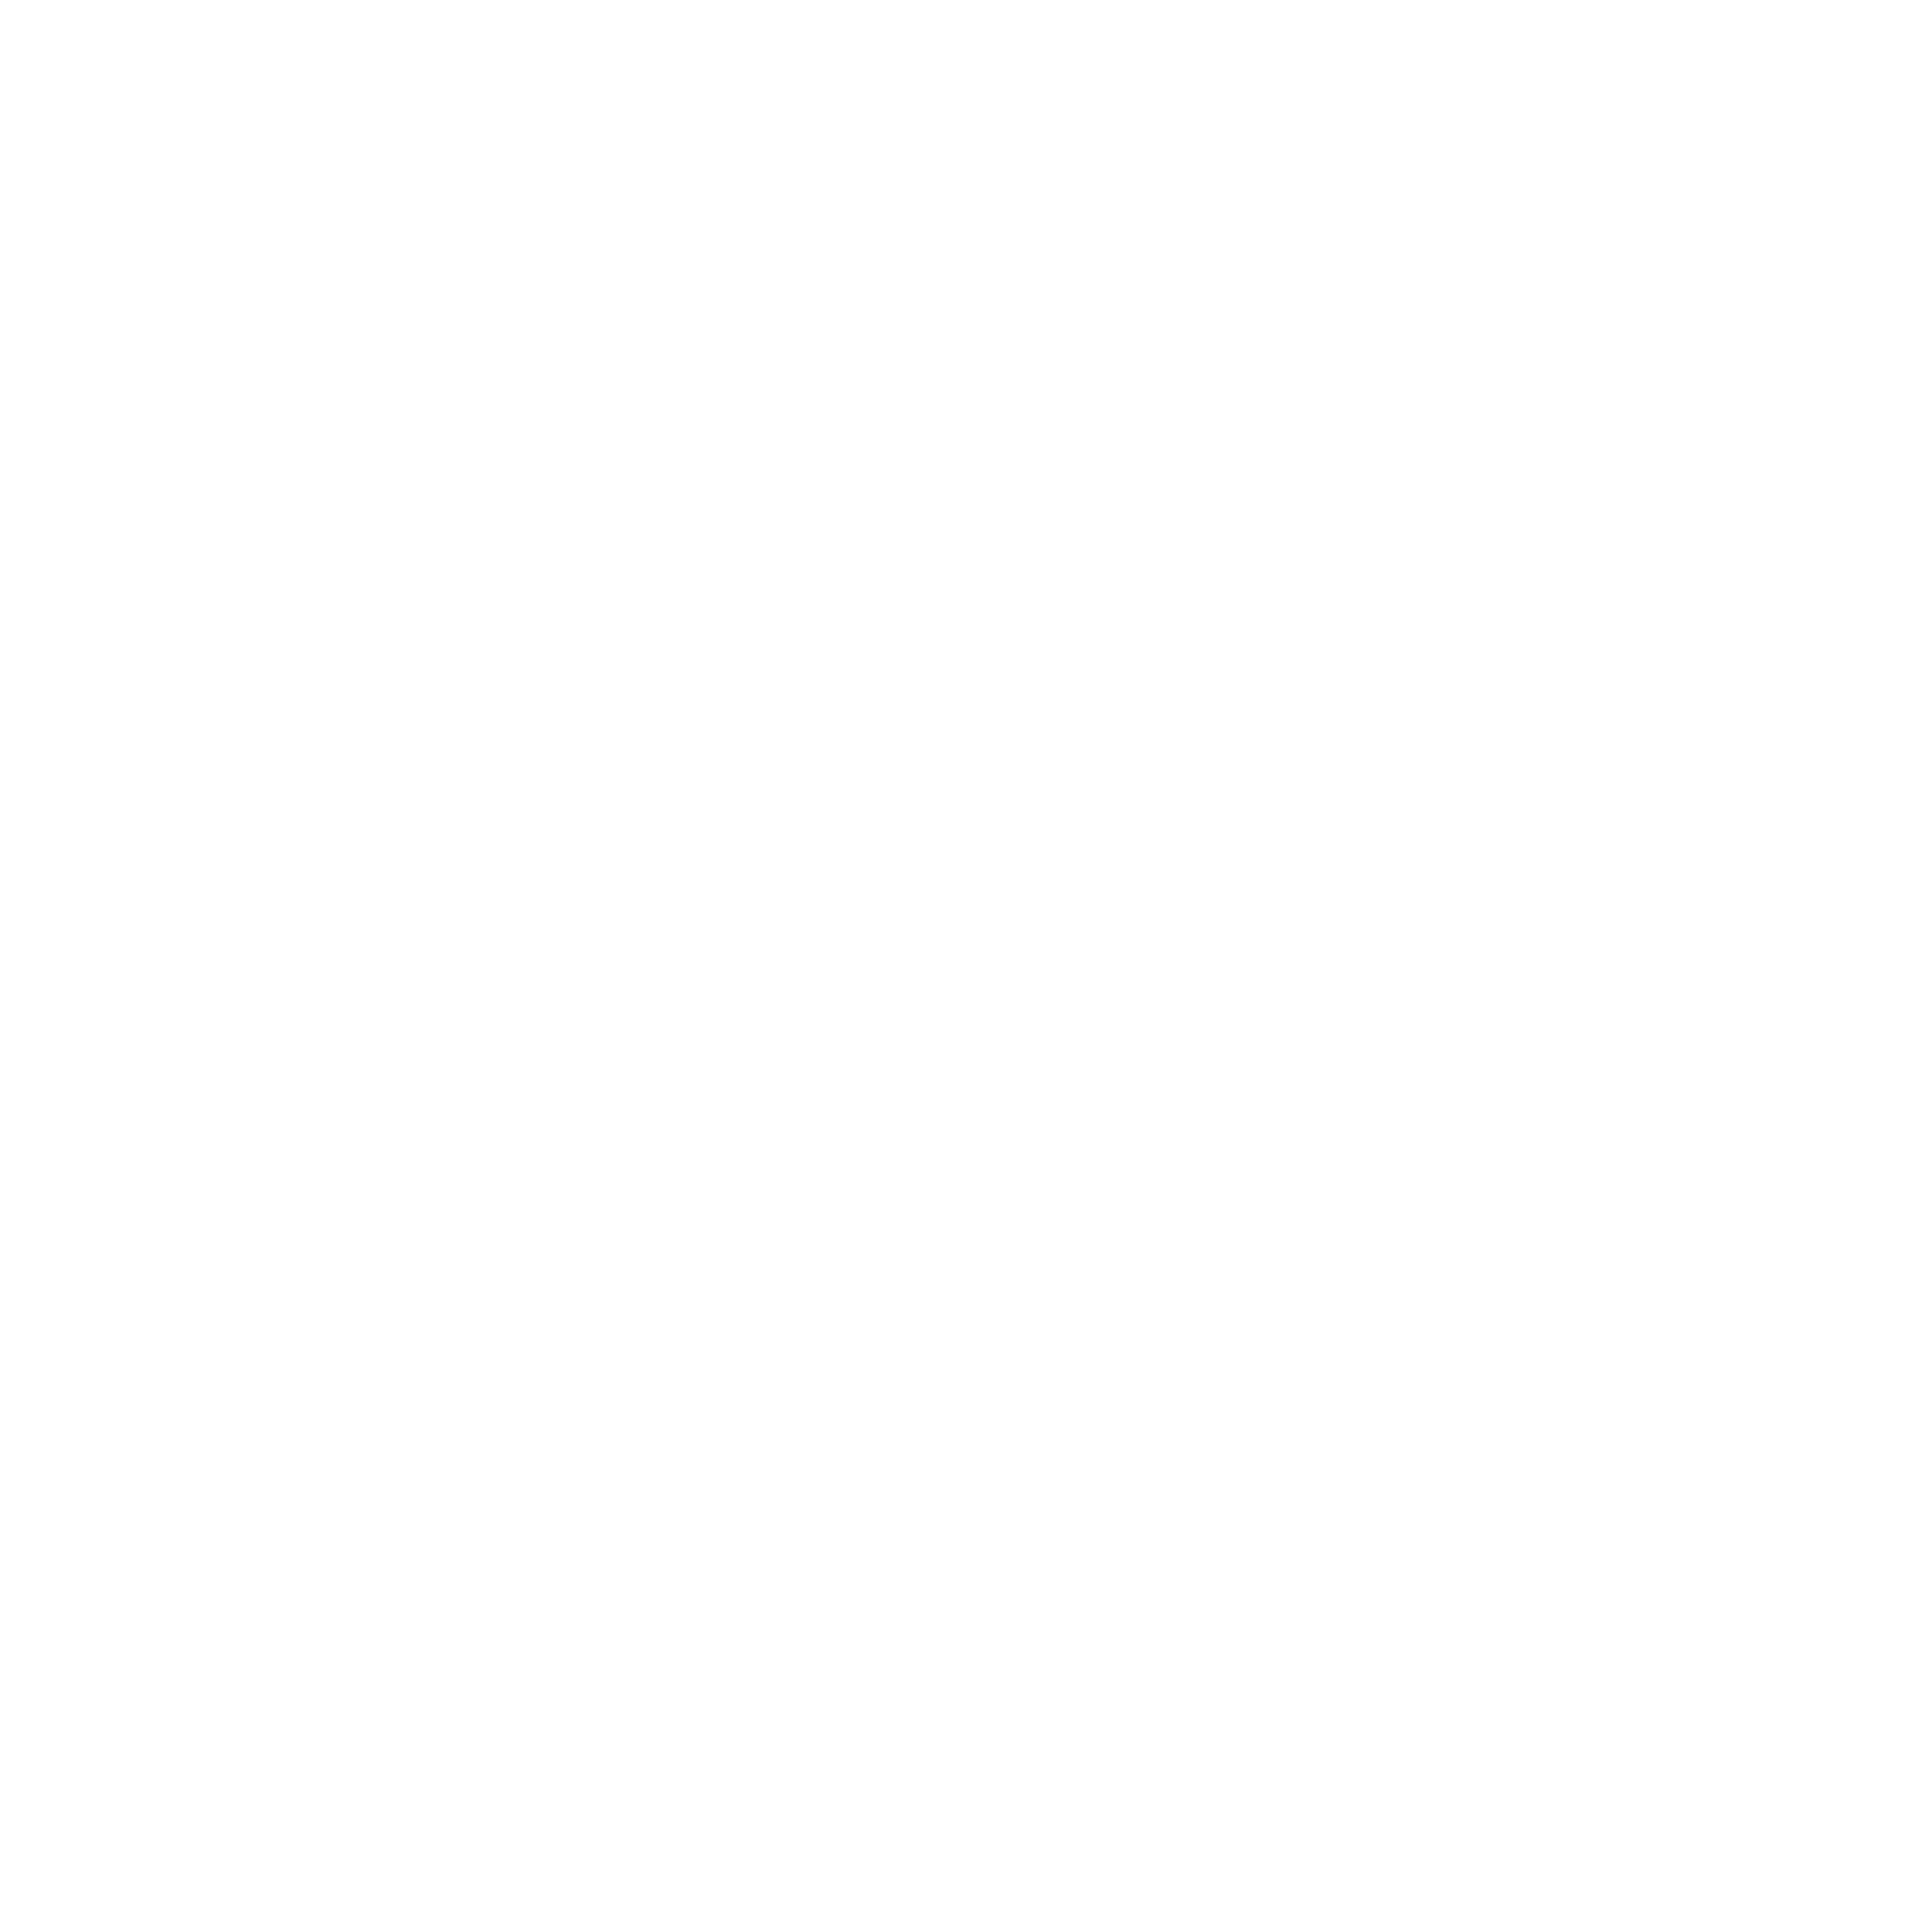 Enterprise Maps LLC